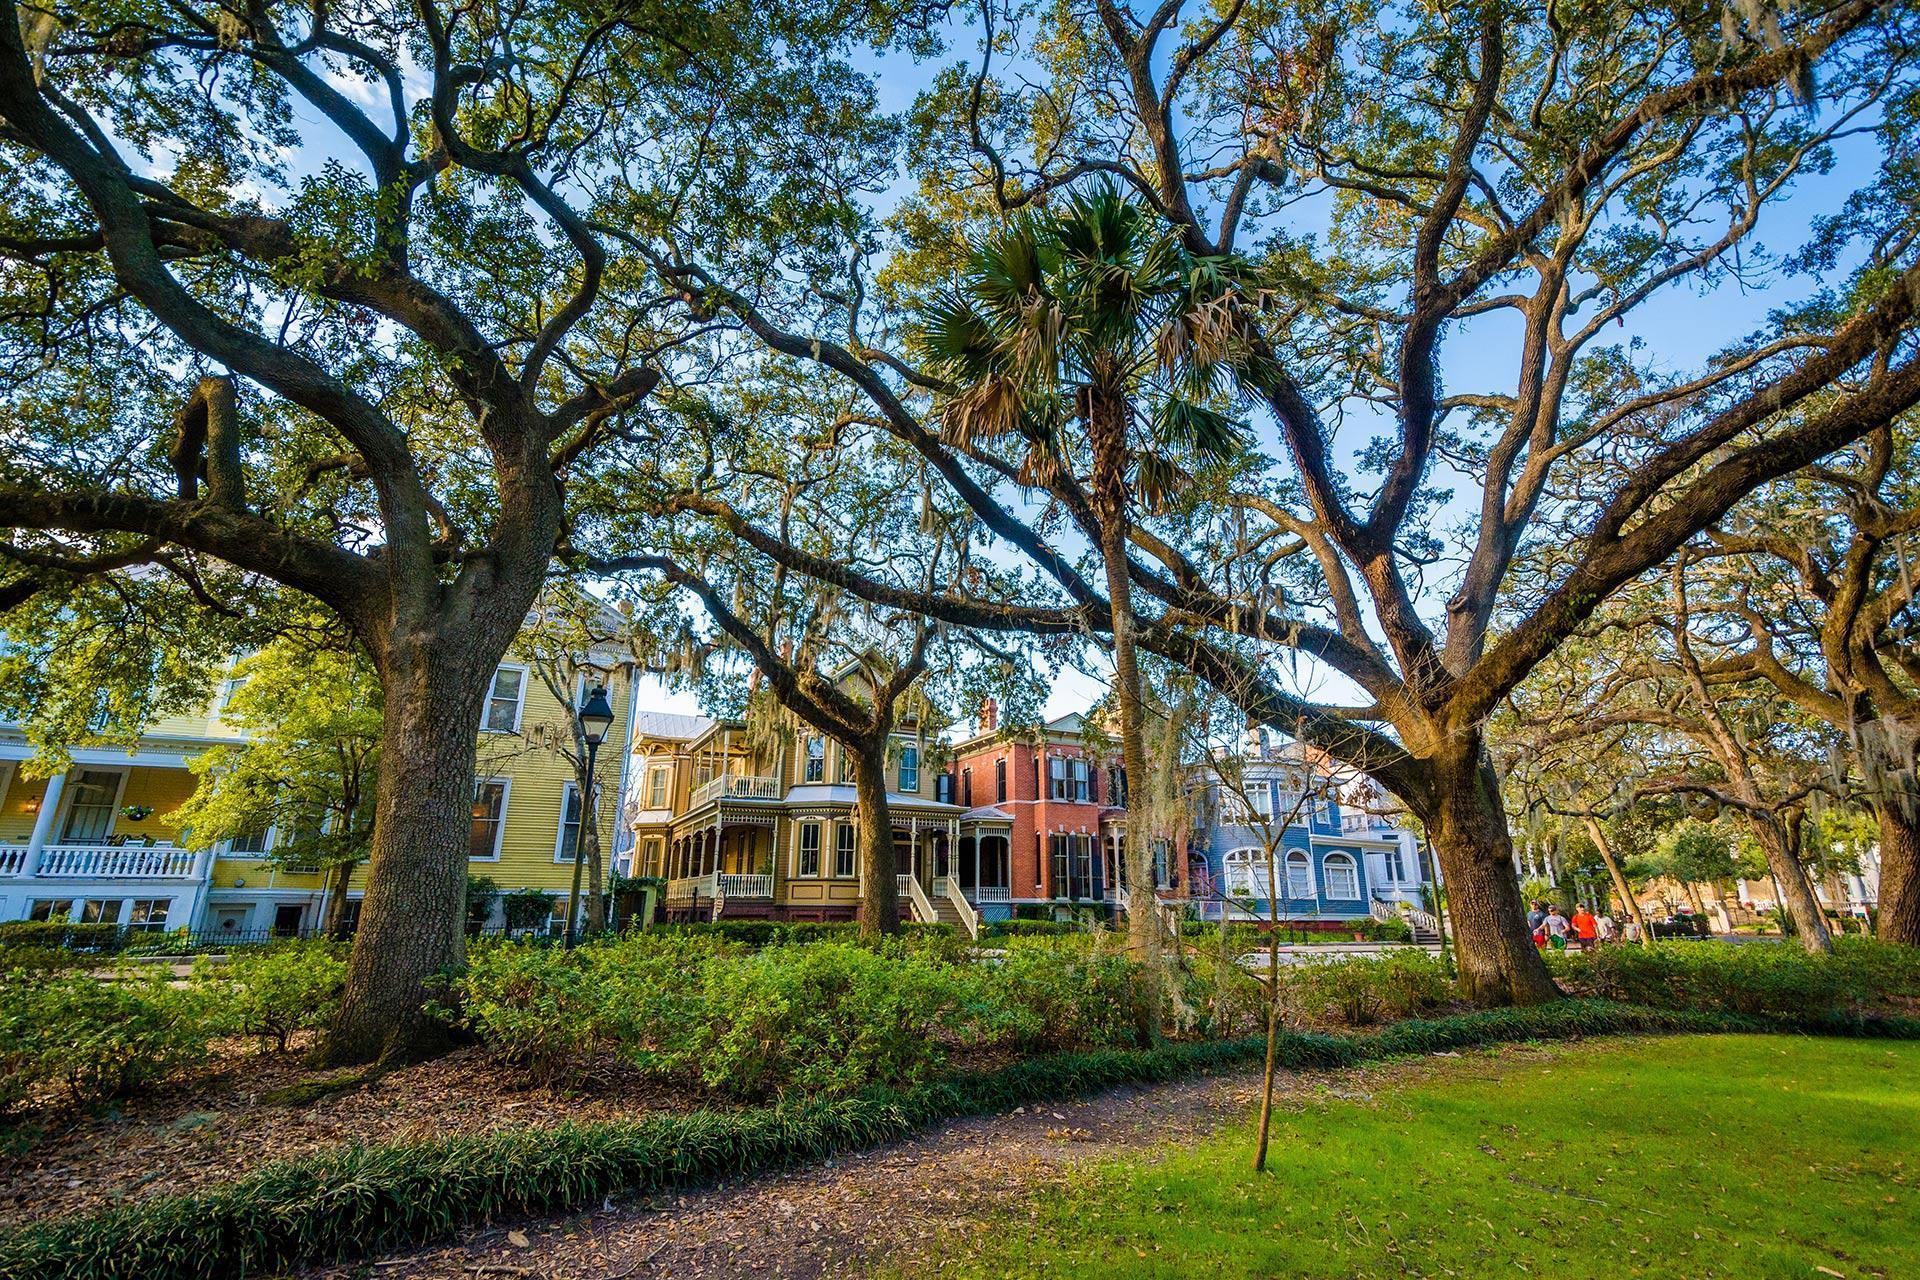 A green-space park in Savannah, GA.